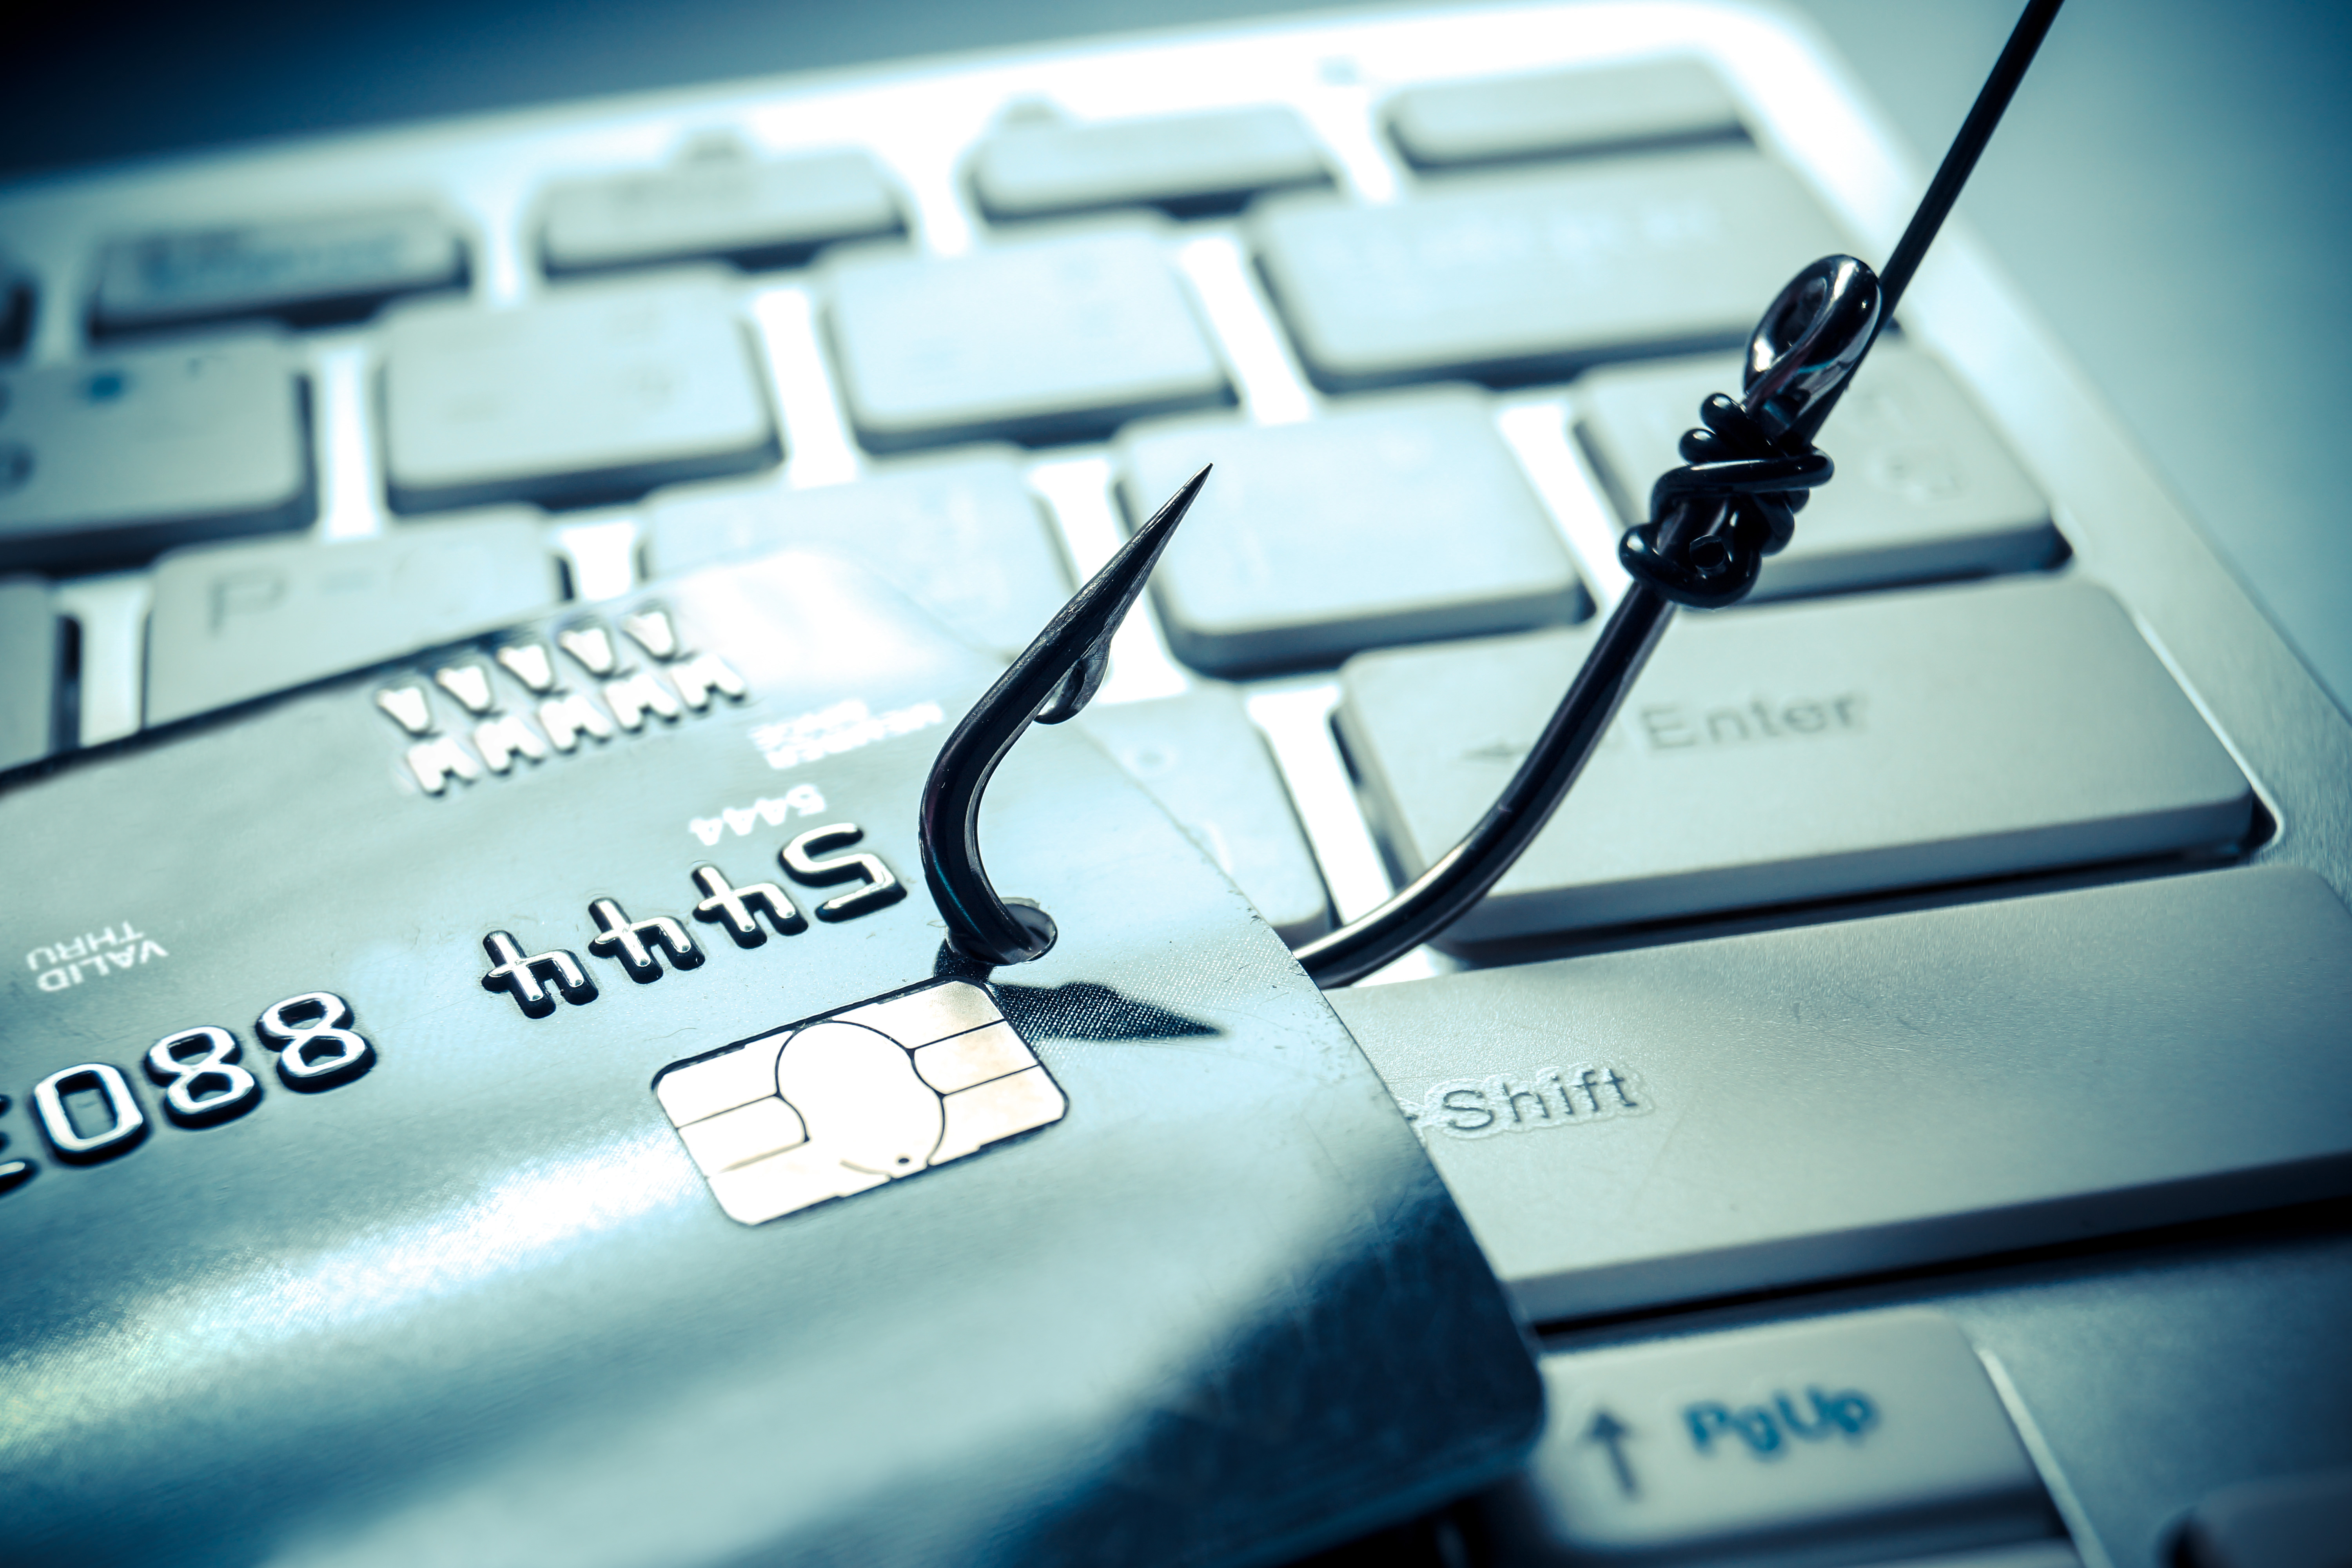 Ne tombez pas dans le piège ! Découvrez les 5 techniques de phishing les plus courantes pour mieux vous protéger en ligne. © weerapat1003, Adobe Stock